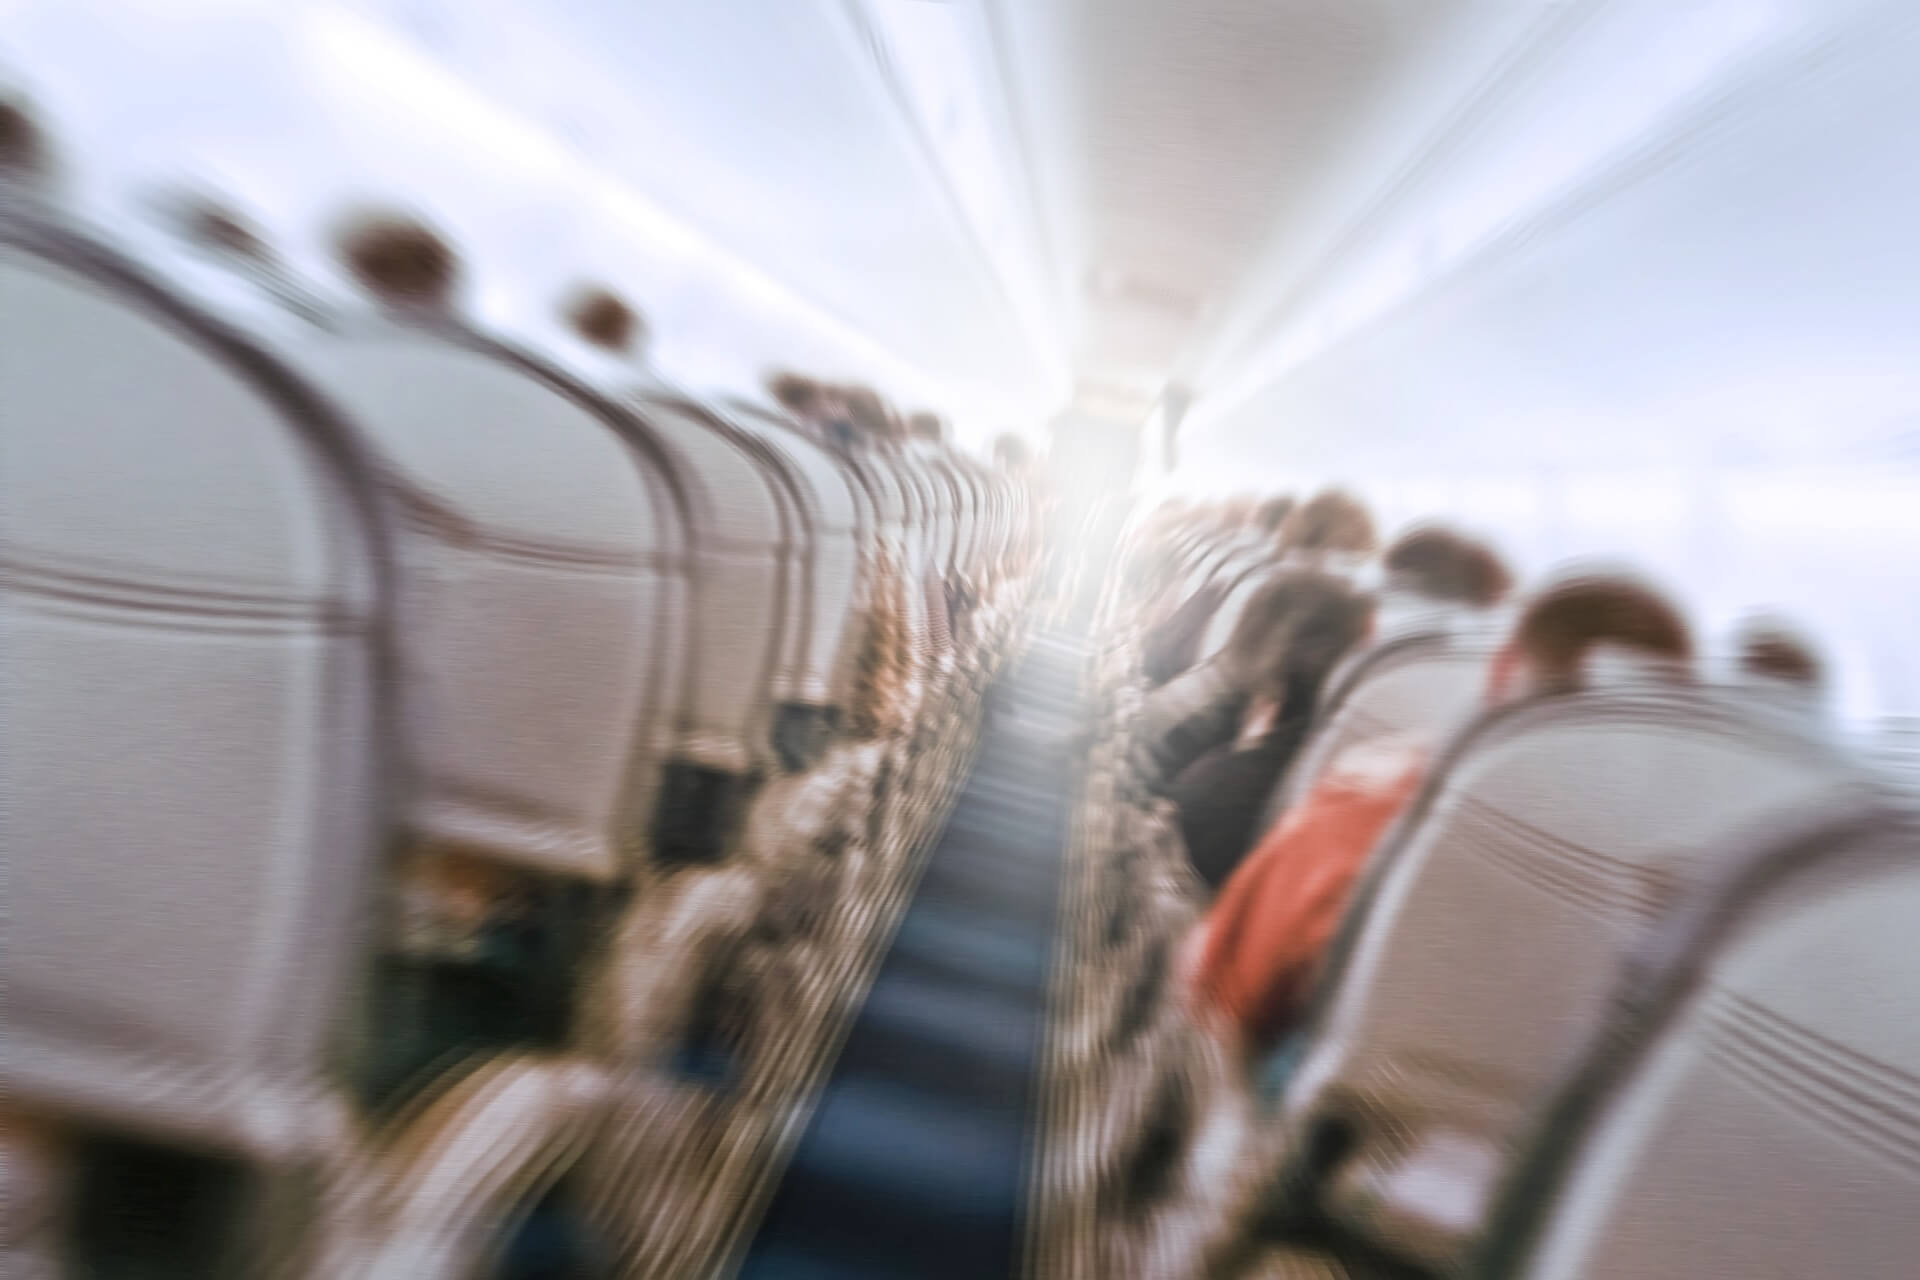 Nie mehr Panik im Flieger: 5 Tipps für einen entspannten Flug